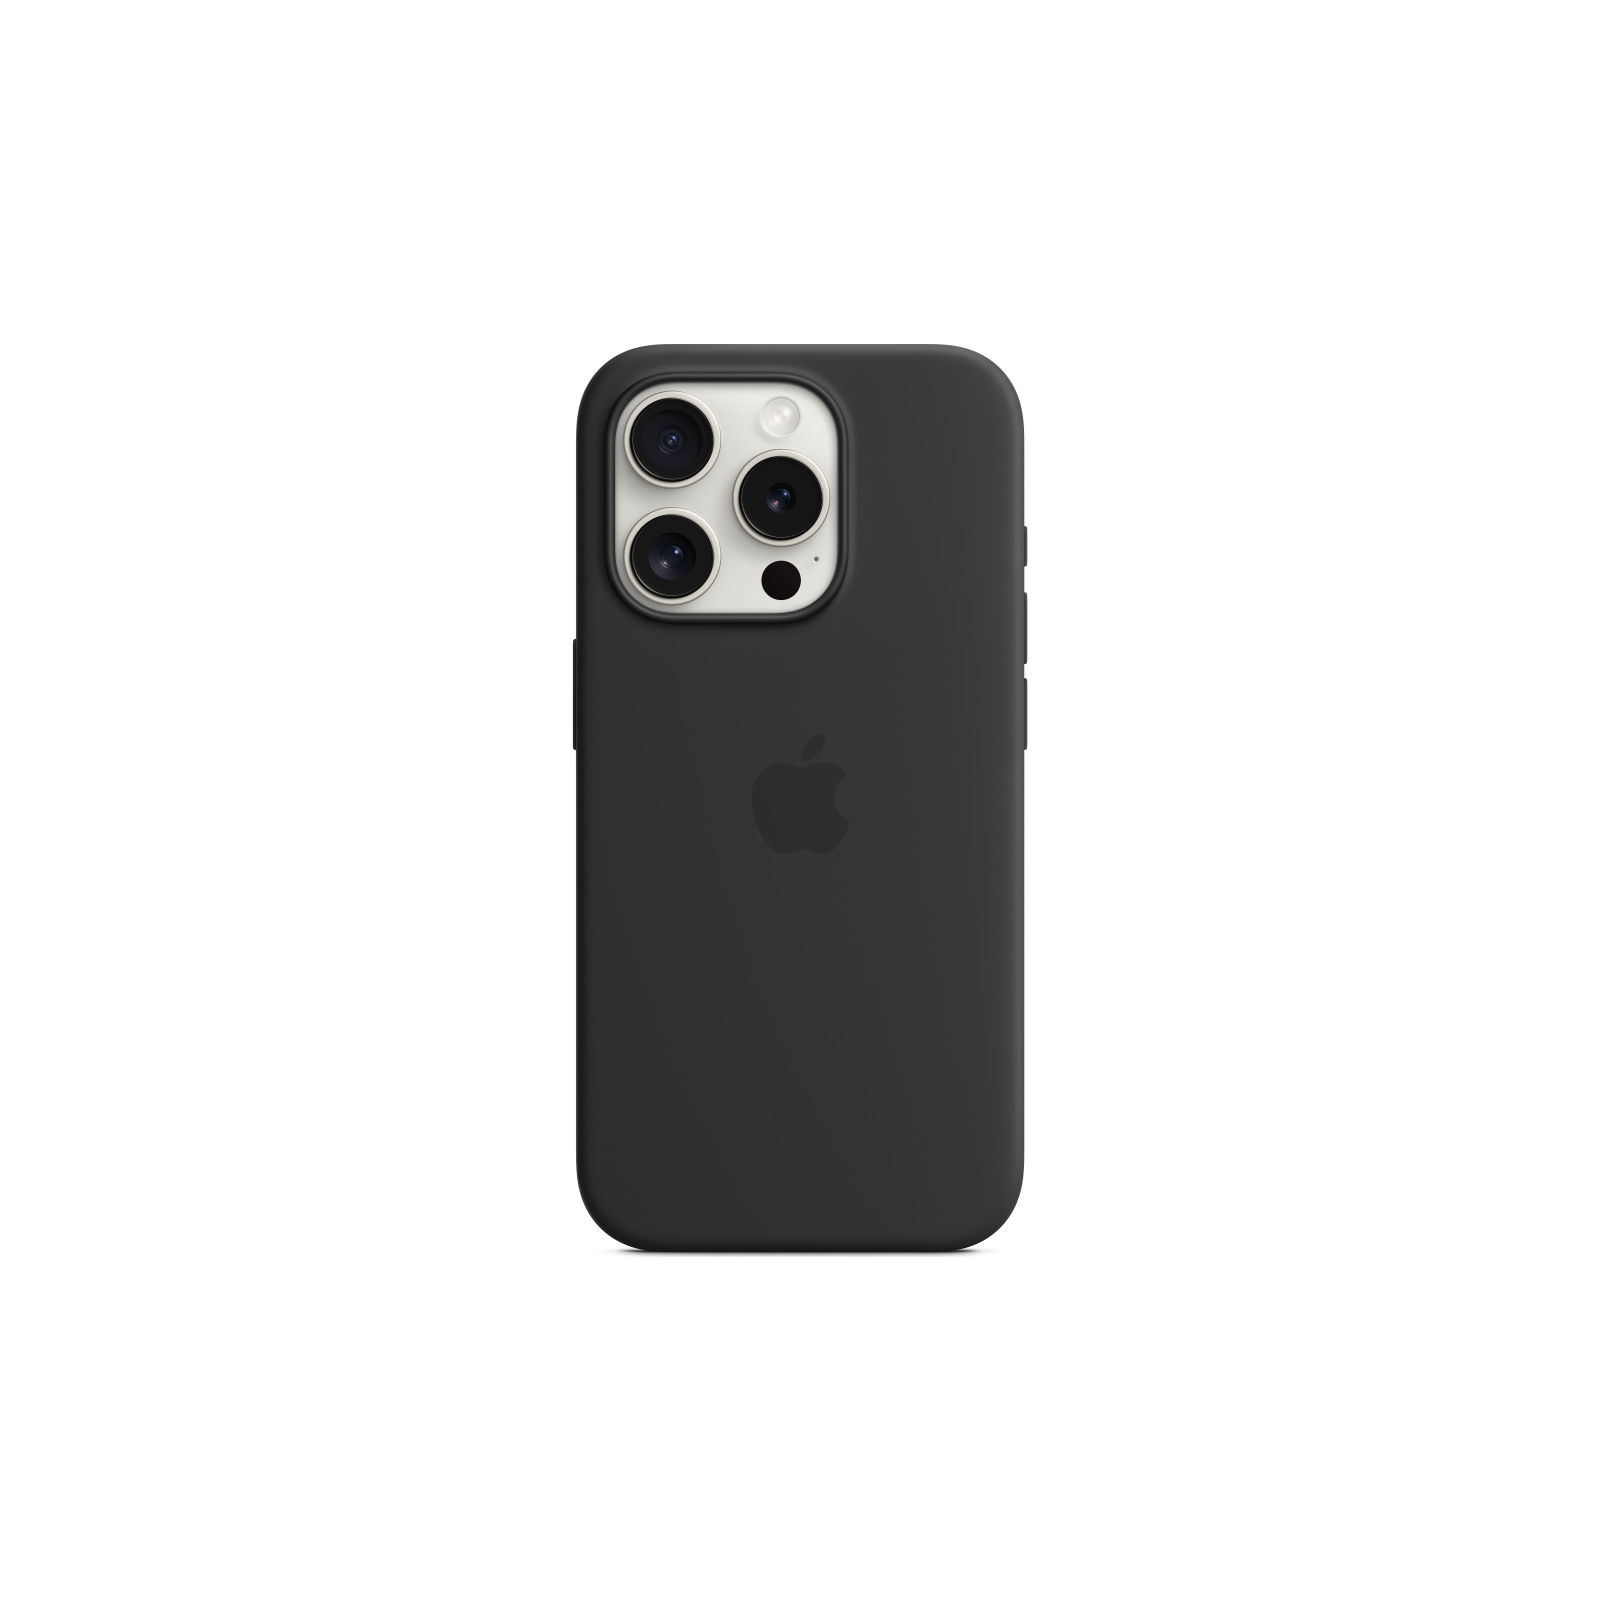 Чехол для мобильного телефона Apple iPhone 15 Pro Silicone Case with MagSafe Light Pink (MT1F3ZM/A) изображение 3